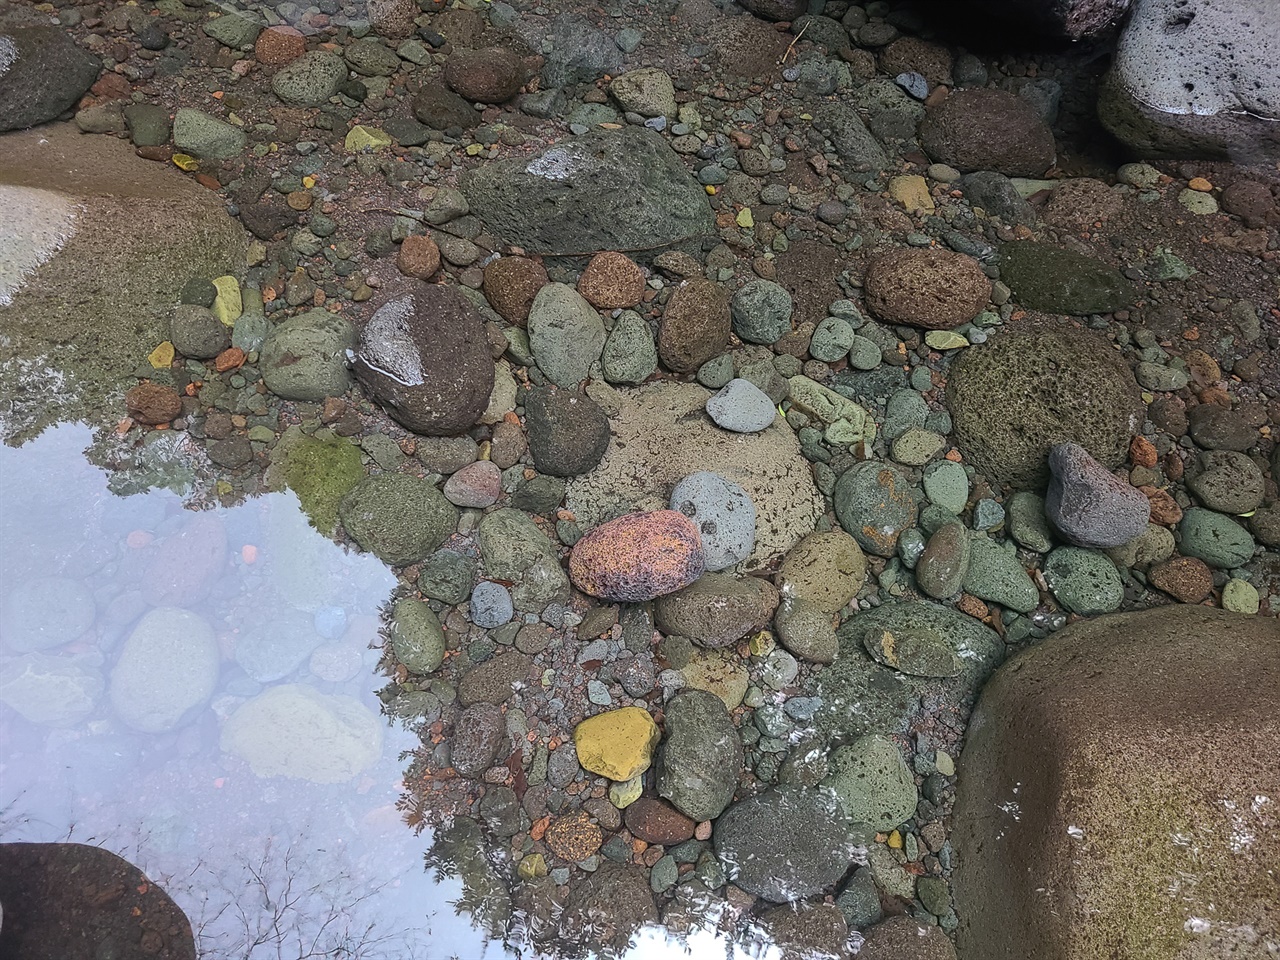 얼핏 보면 물 속이 아닌 듯, 나뭇잎의 그림자 선을 보고서야 비로소 물 속임을 알 수 있을 정도의 맑고 잔잔한 흐름. 그 속에 형형색색의 돌들이 있다.